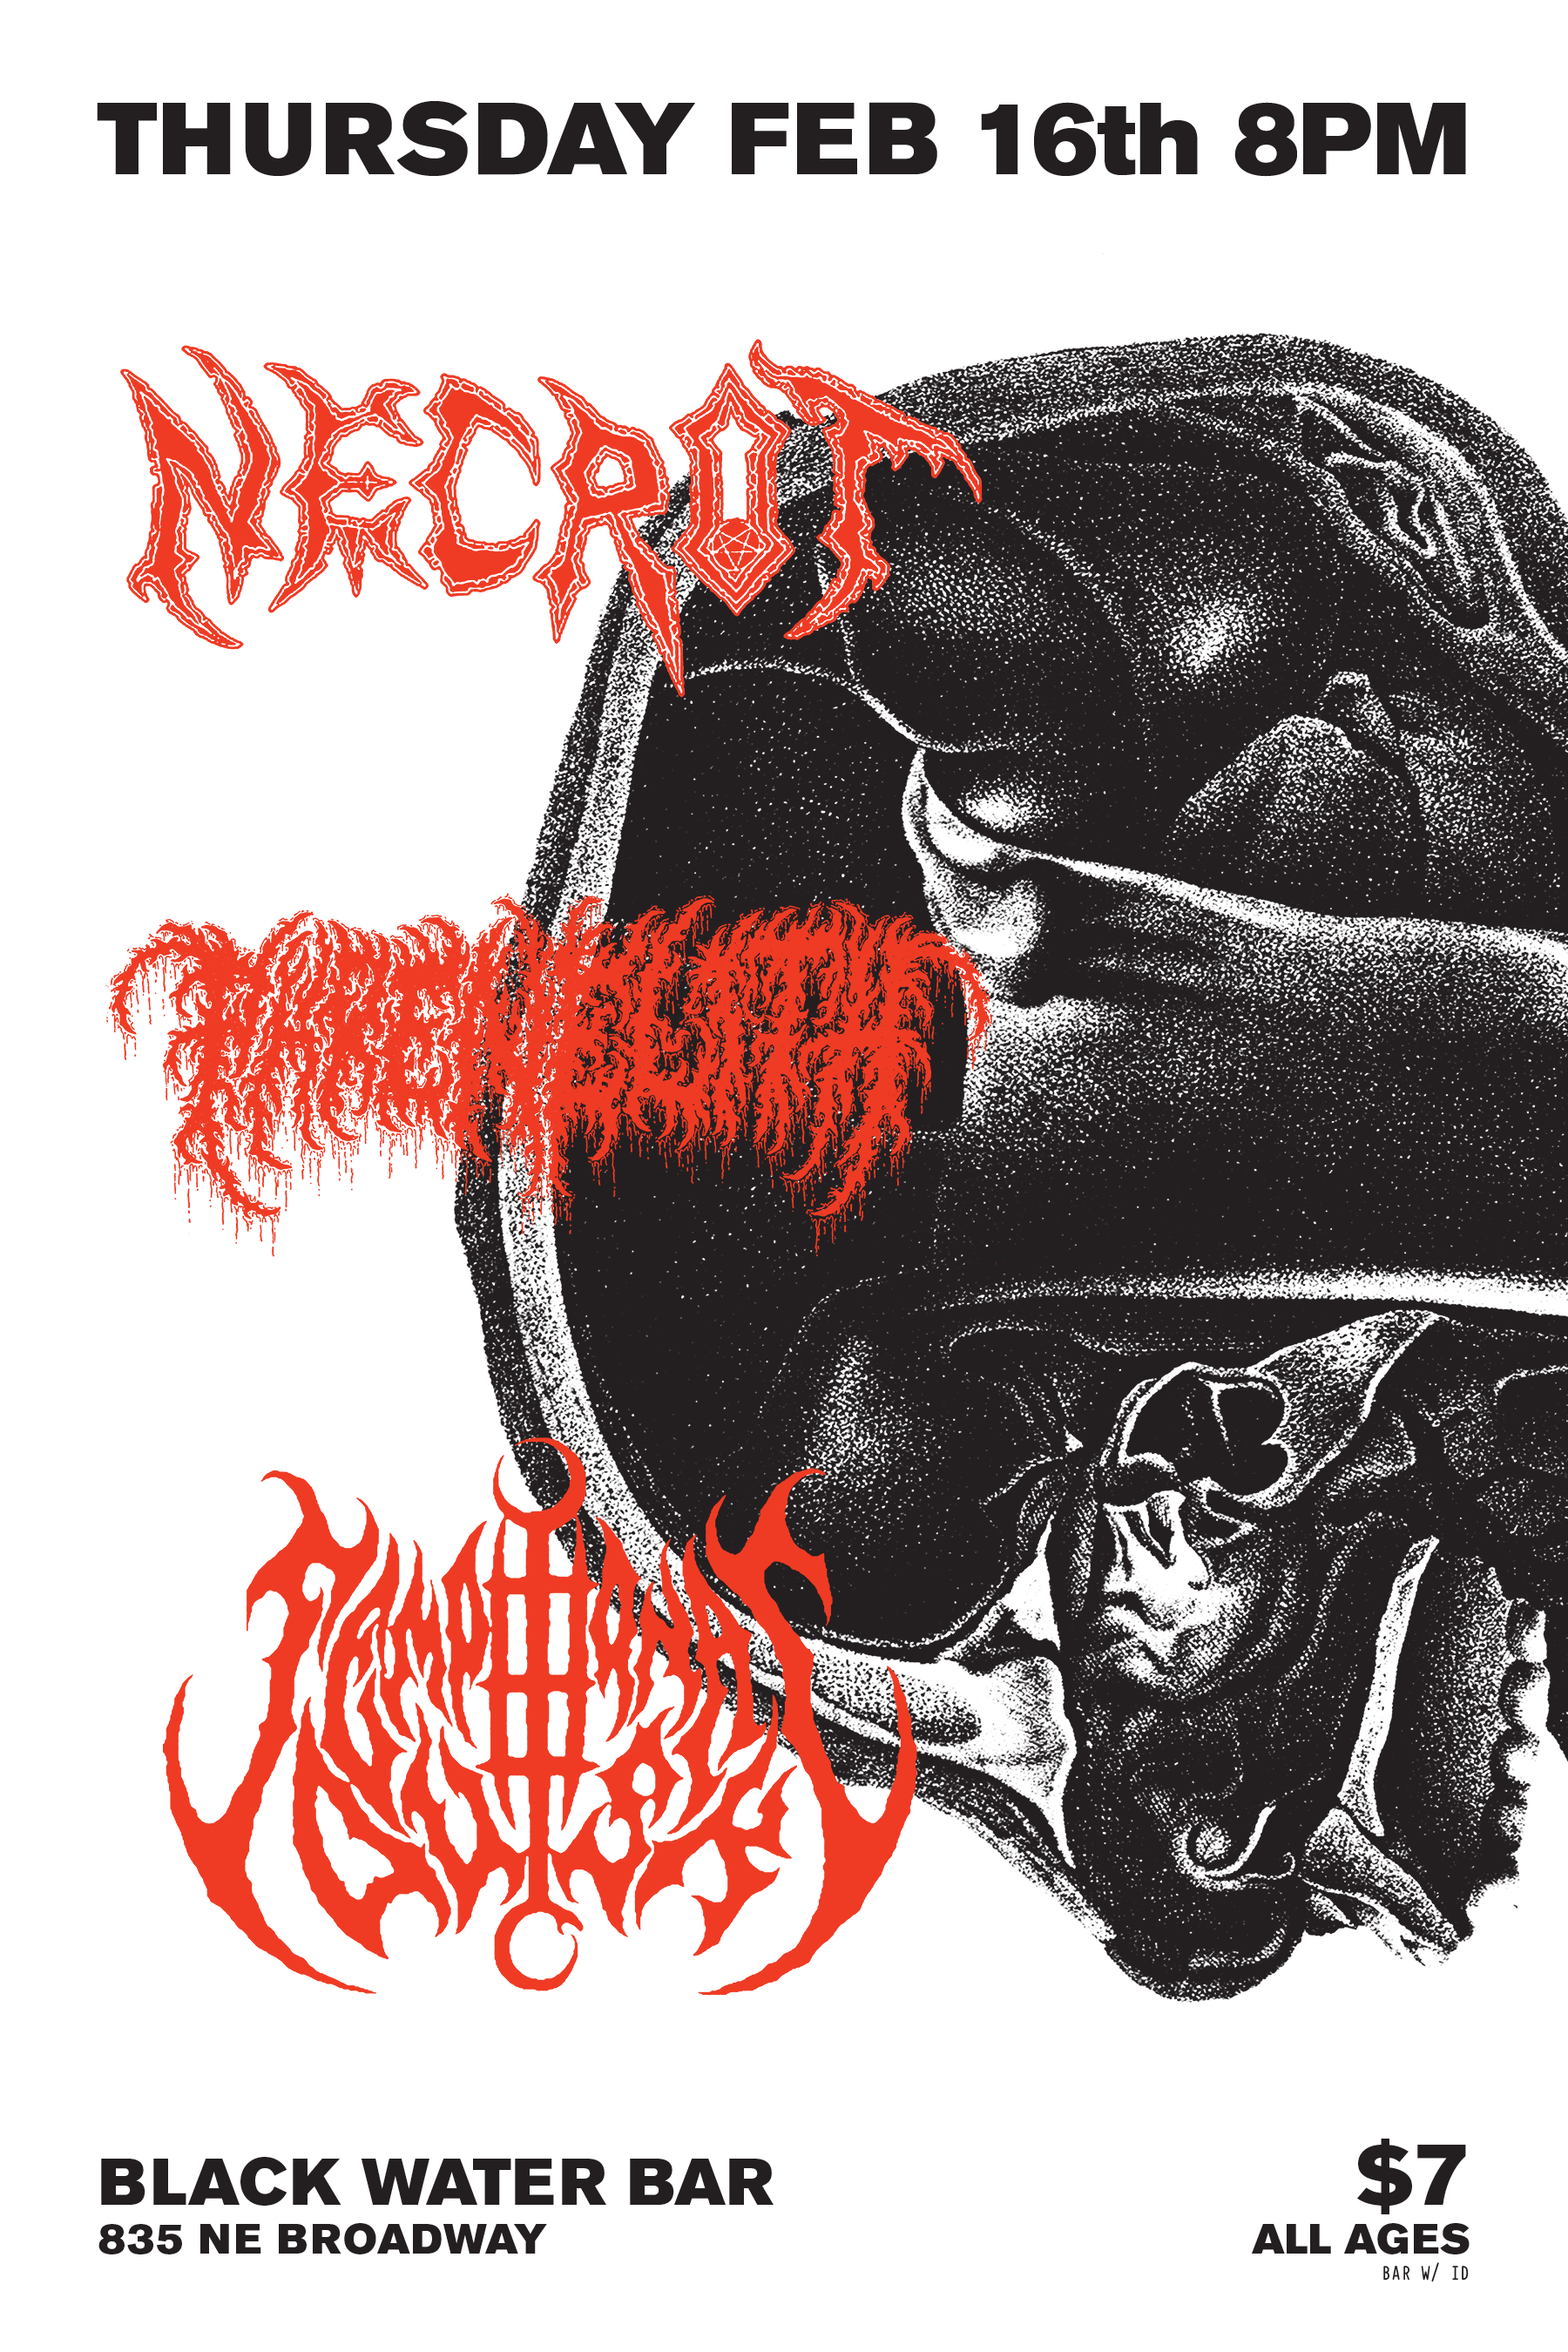 Necrot / Phrenelith Poster